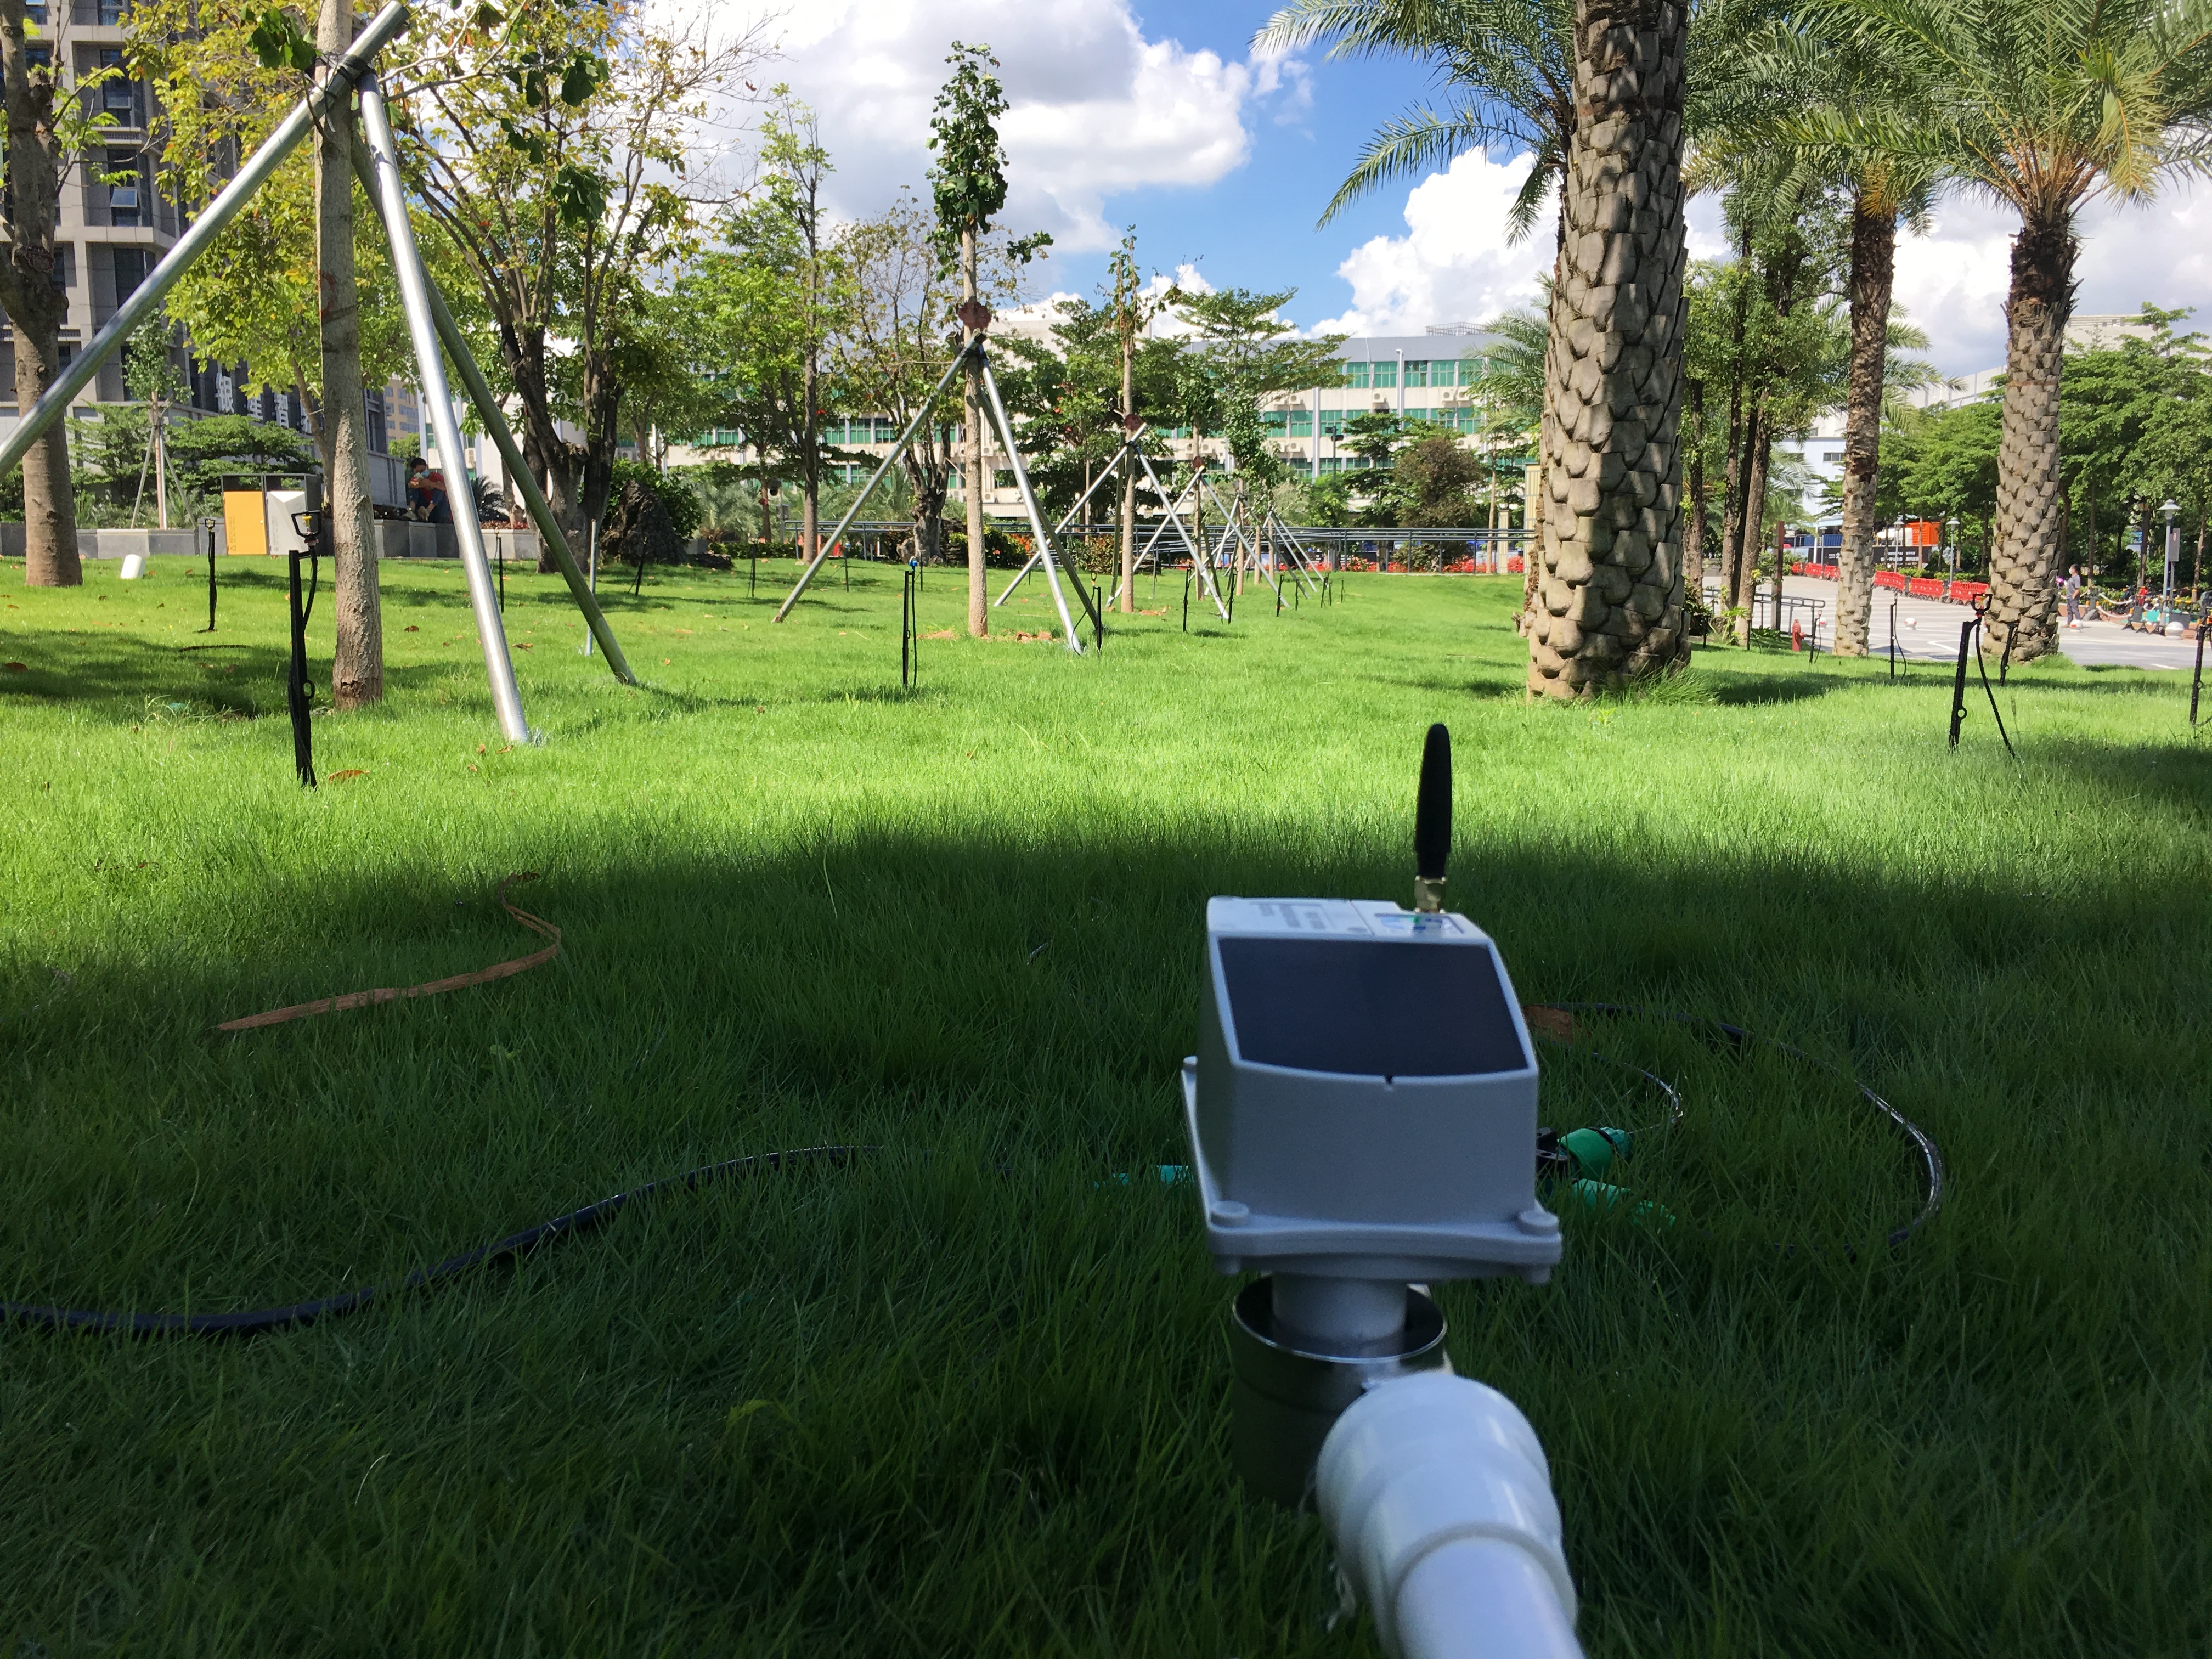 Temporizador de mangueira de jardim inteligente controlado por GSM com serviços Iot totalmente gerenciados